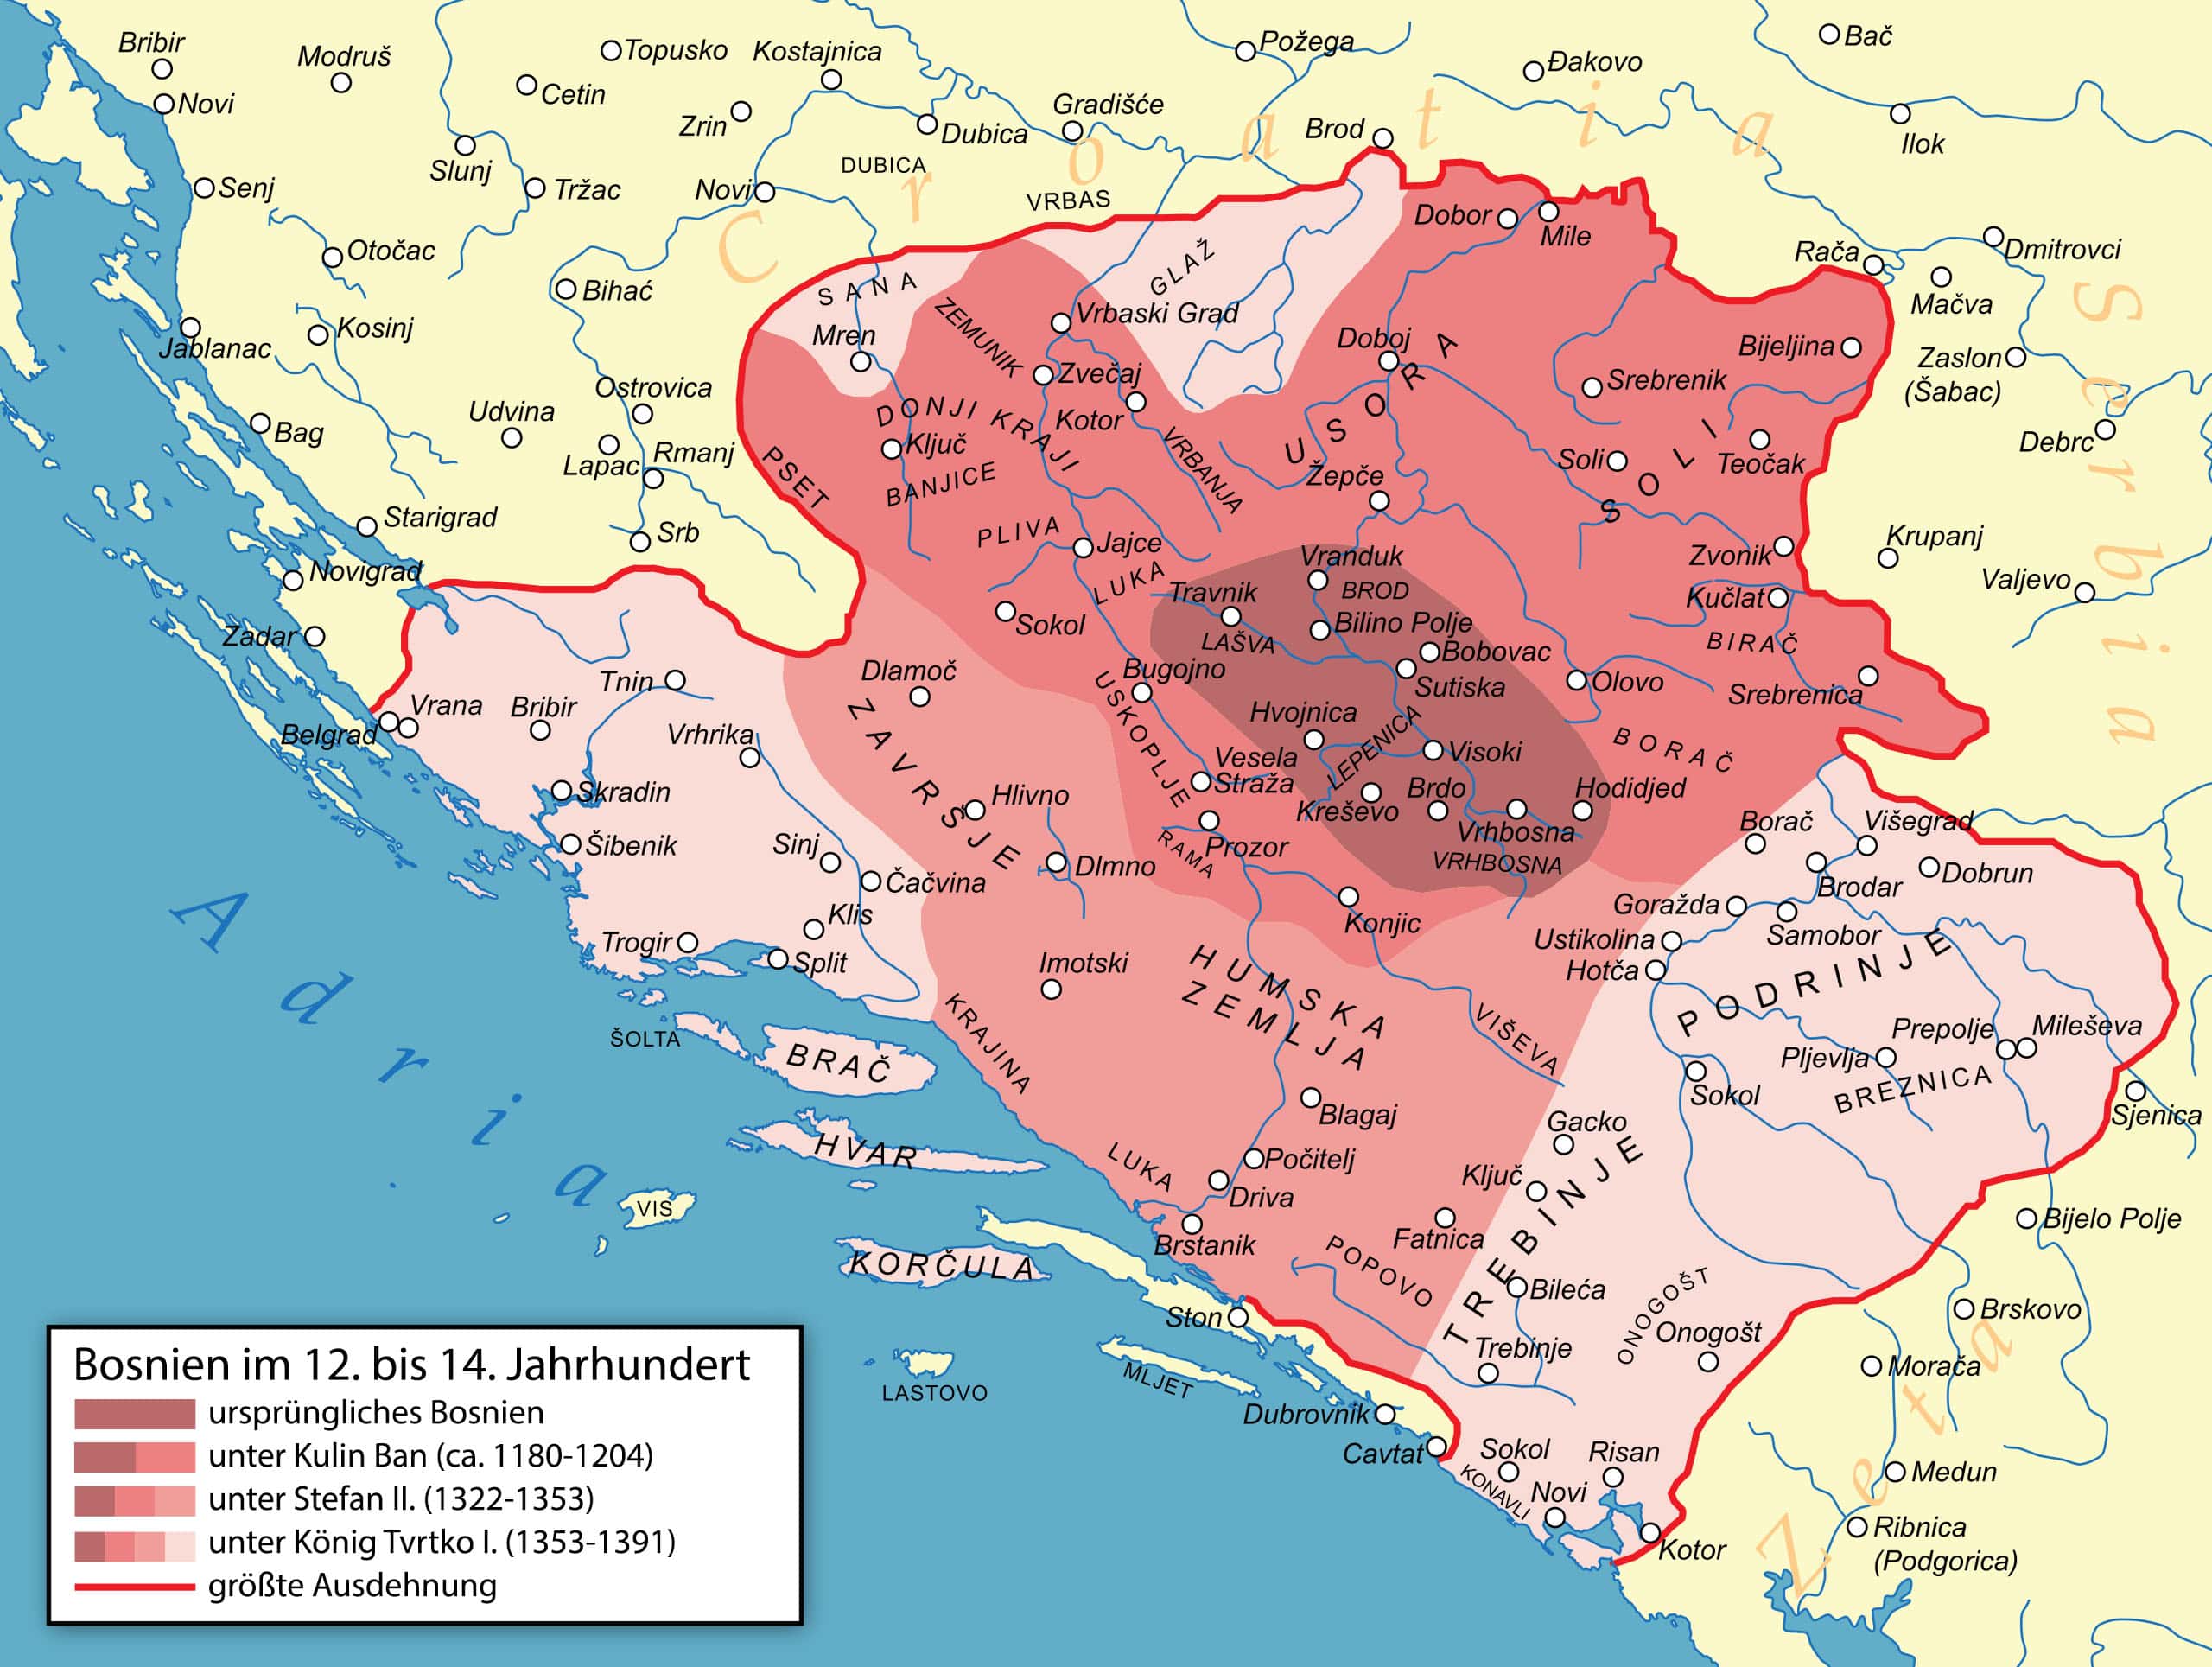 Ausdehnung des Königreichs Bosnien vom 12.-14. Jahrhundert